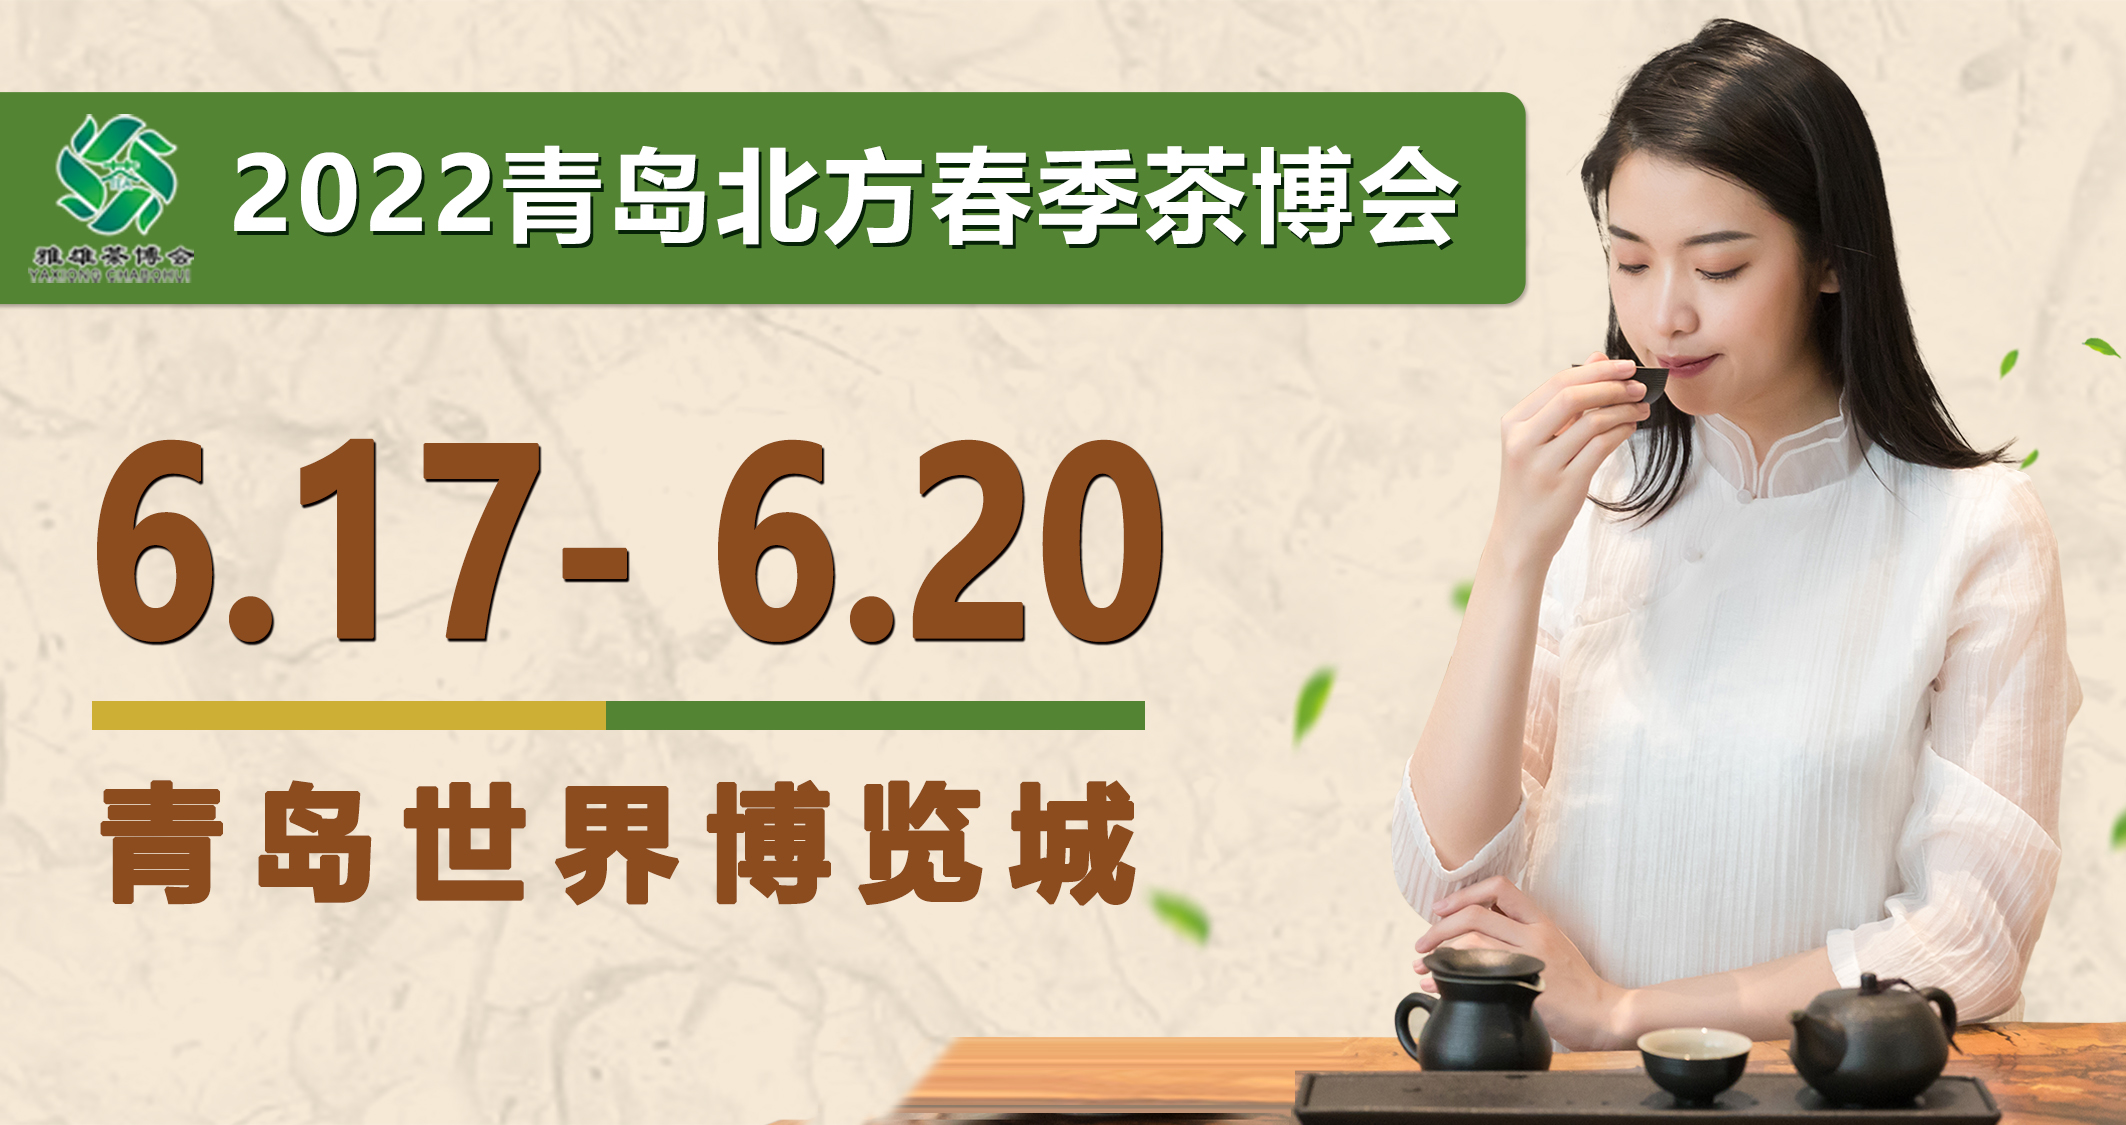 2022青岛首场茶博会：青岛北方春季茶博会距开幕仅剩一个月